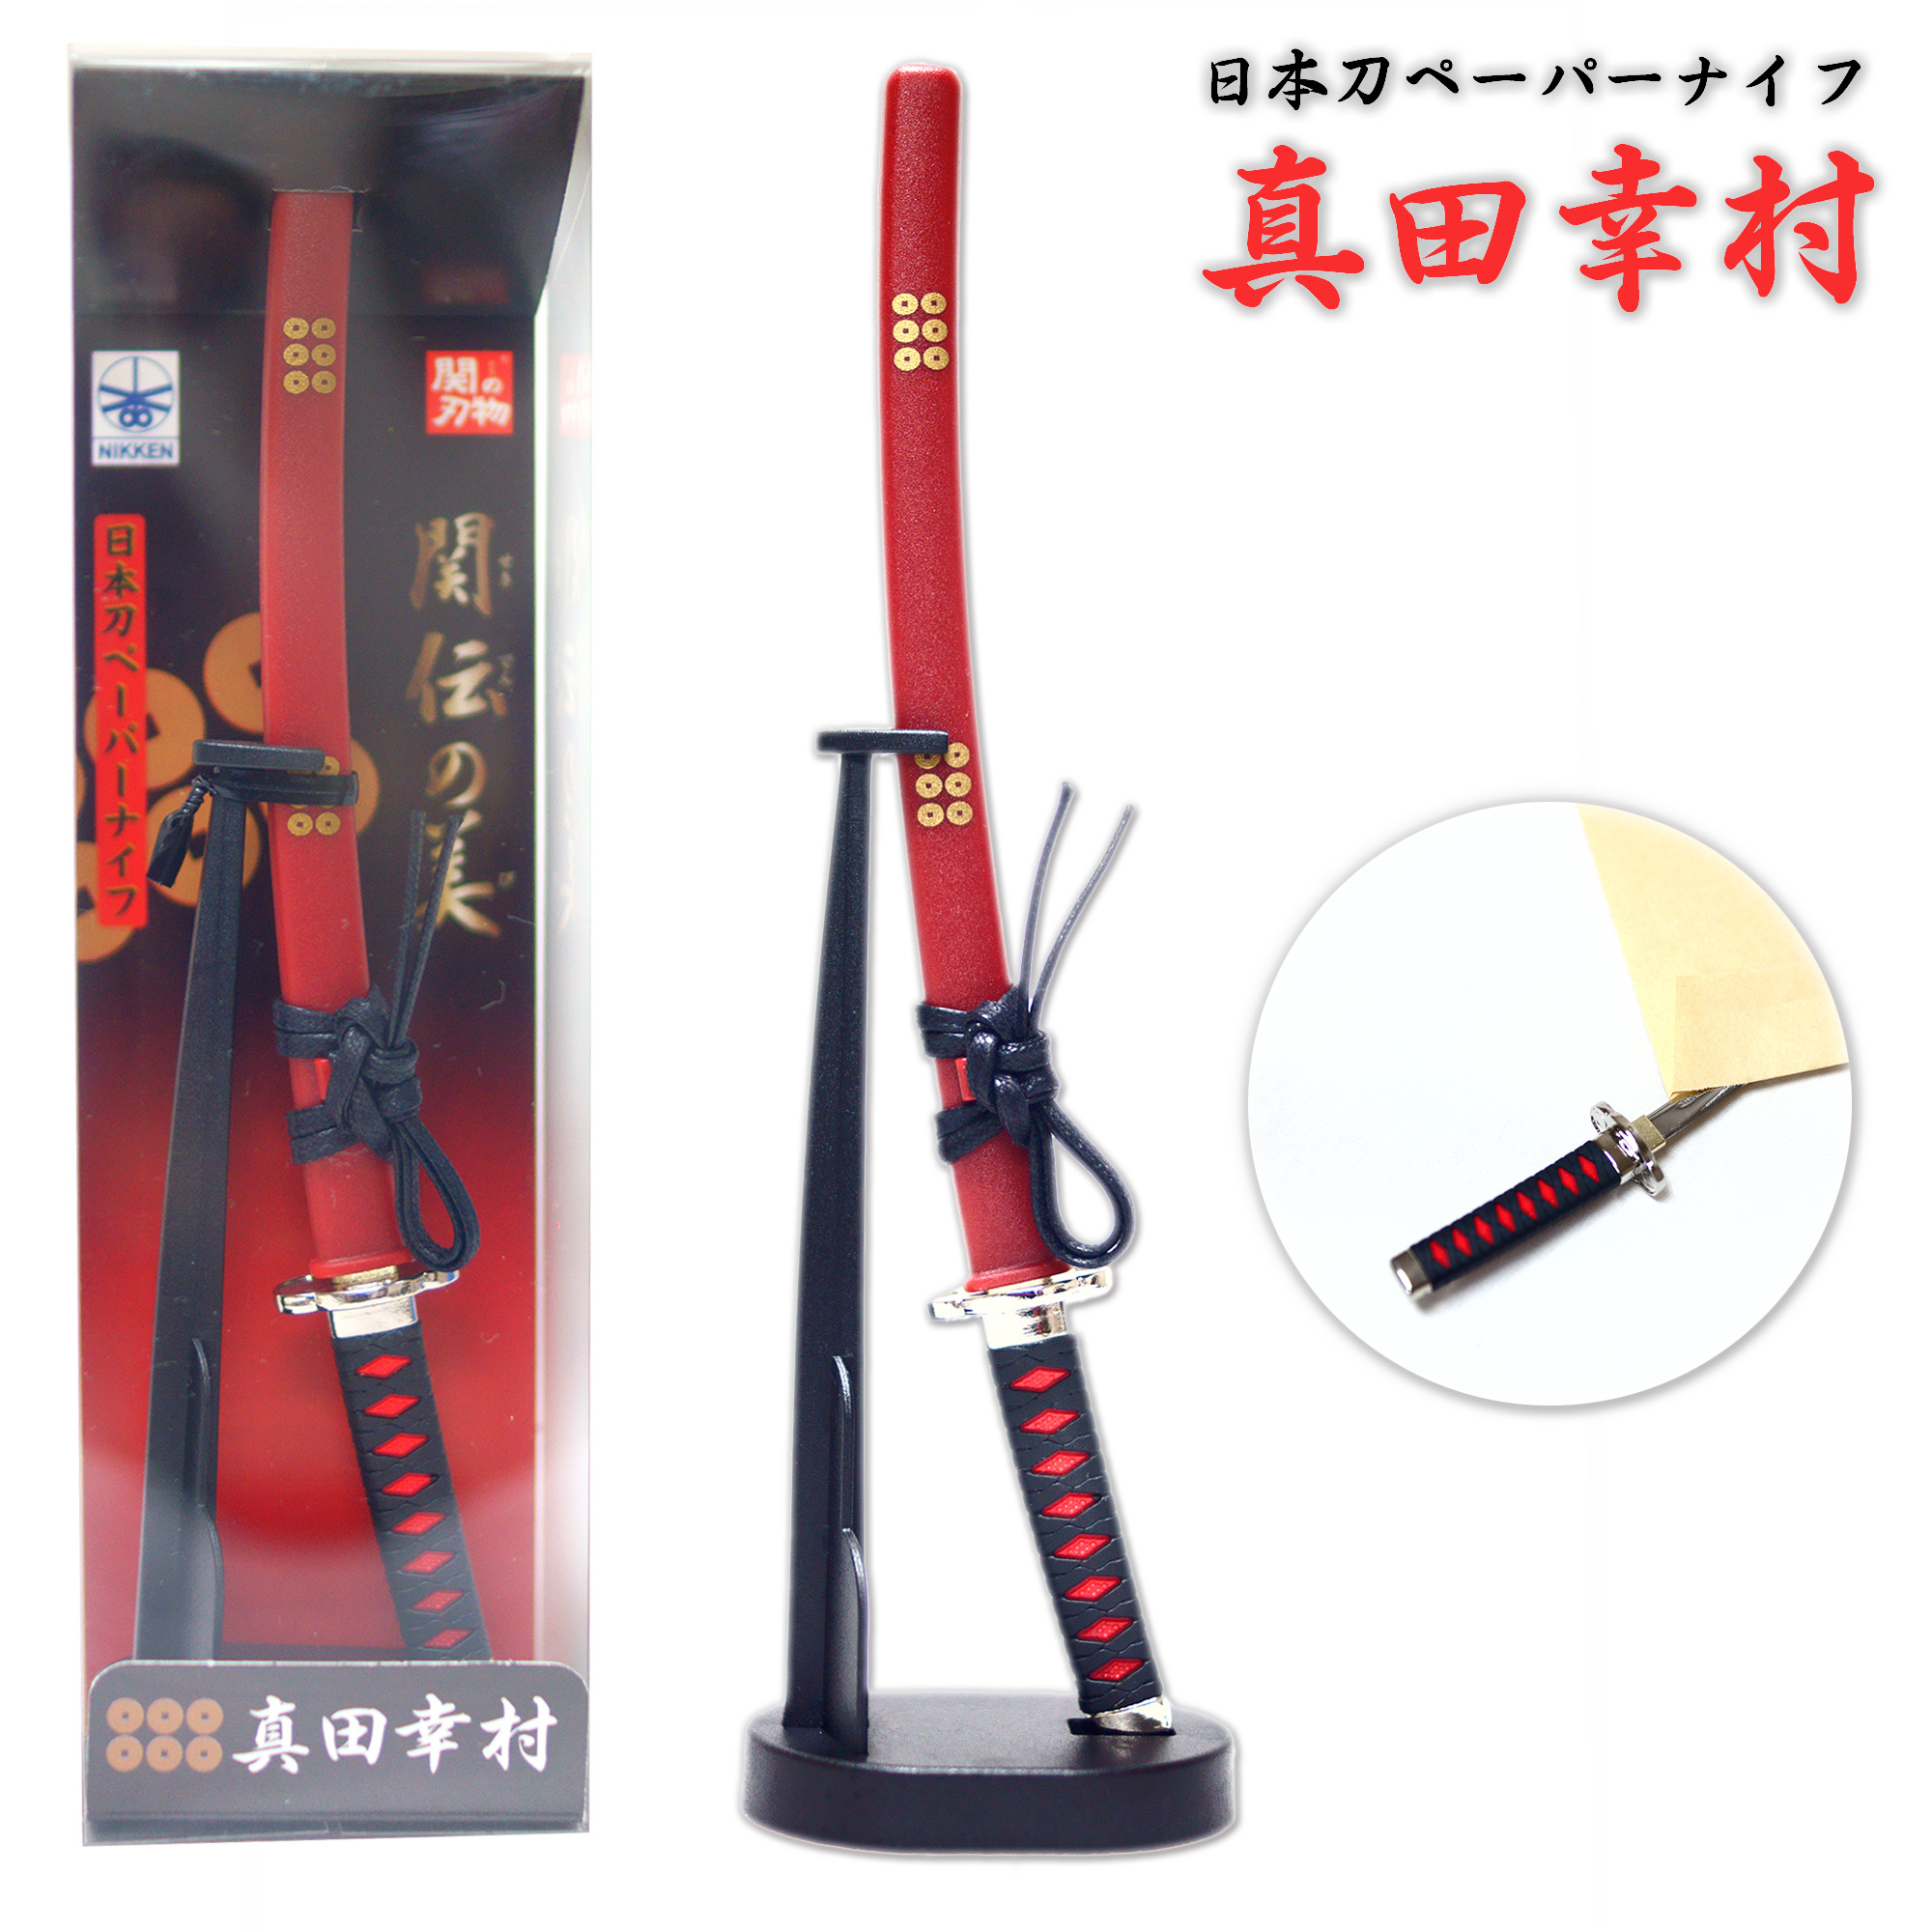 日本刀ペーパーナイフ 真田幸村モデル – ニッケン刃物 刀剣 関の刃物